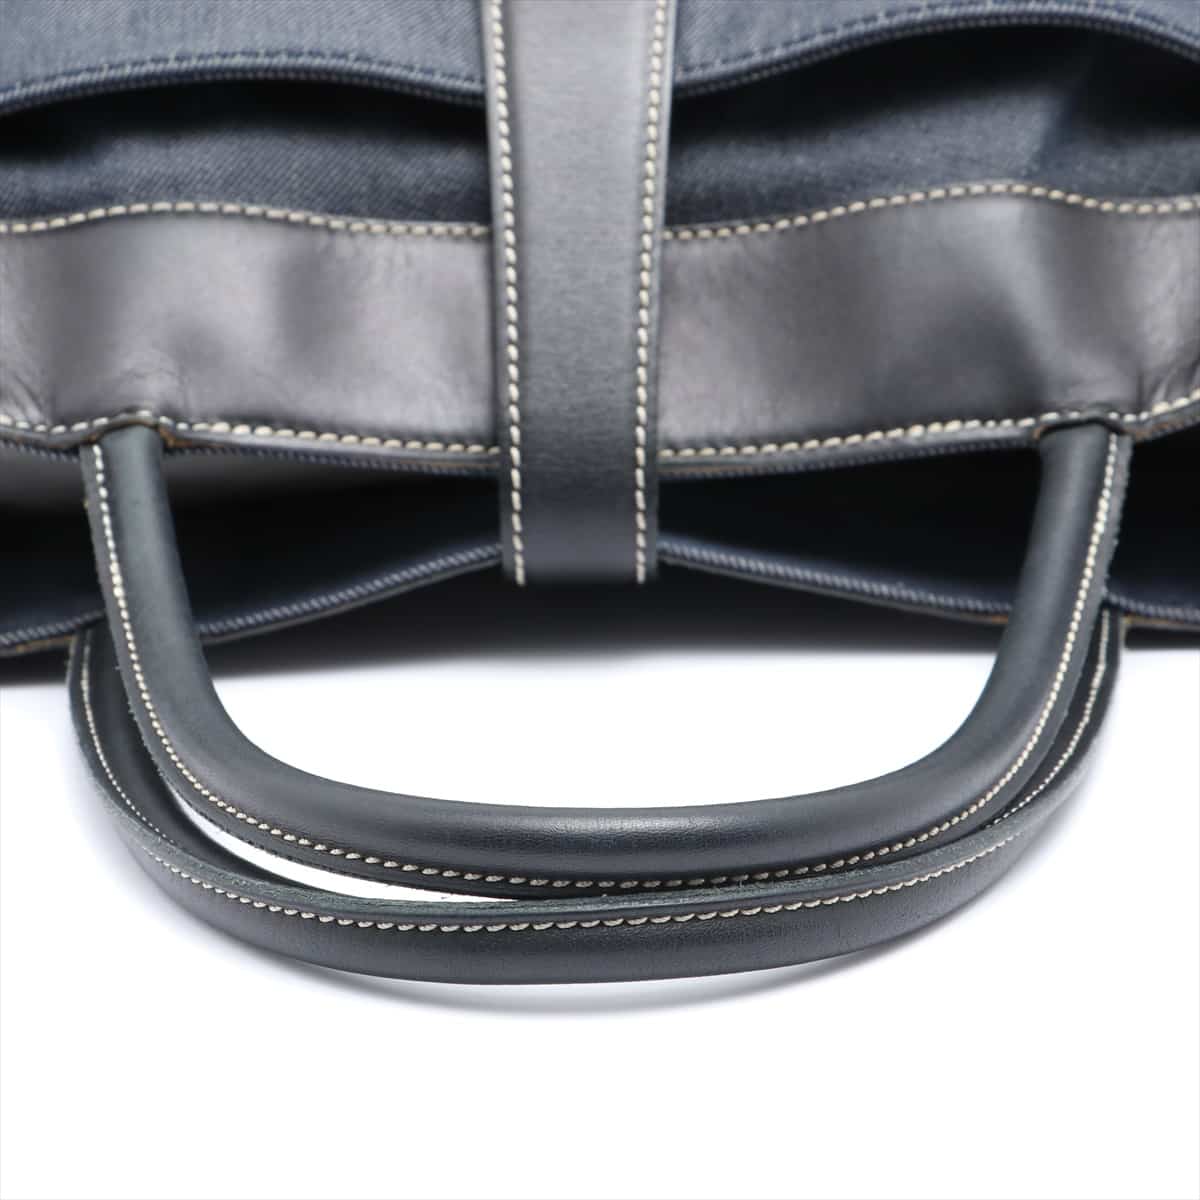 Chanel Coco Mark Denim & leather Hand bag Black x Navy Black hardware 6XXXXXX Corner breaking